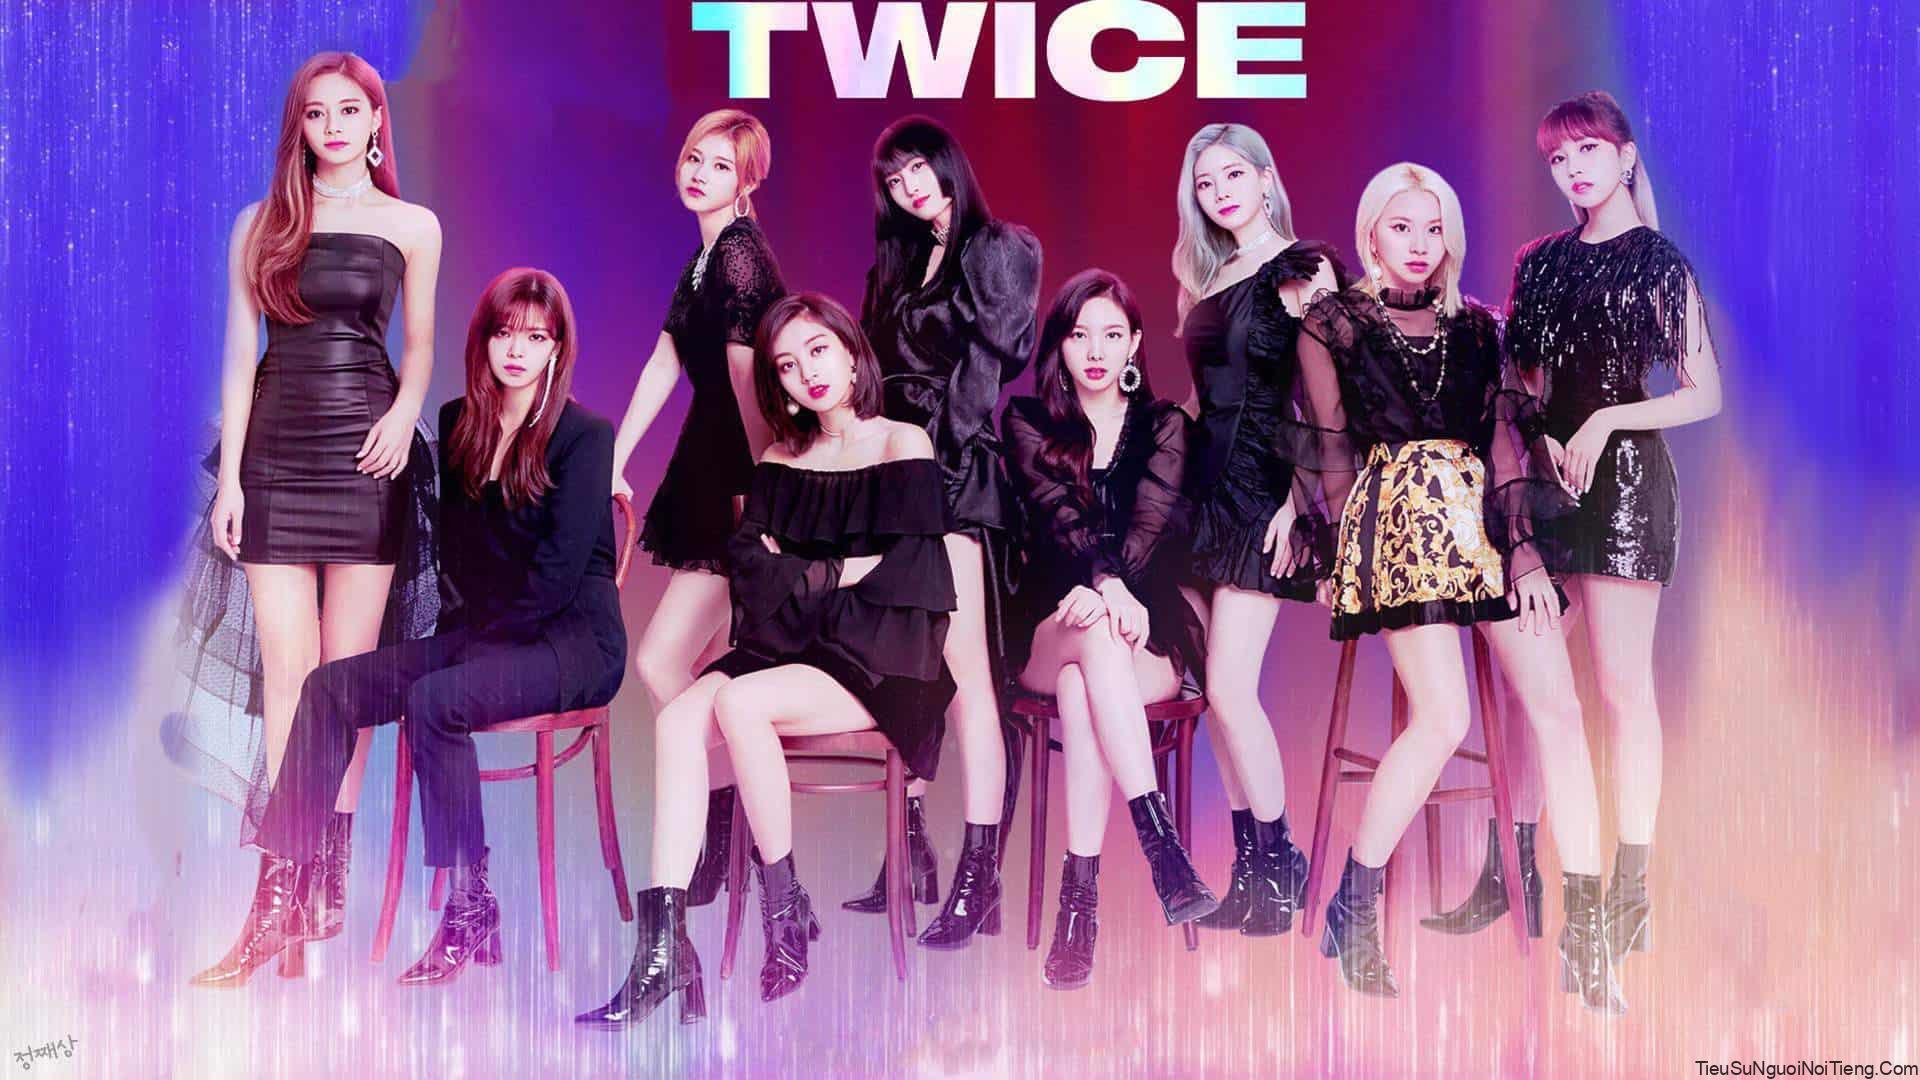 Tiểu sử TWICE – Nhóm nhạc nữ được yêu thích hàng đầu Hàn Quốc